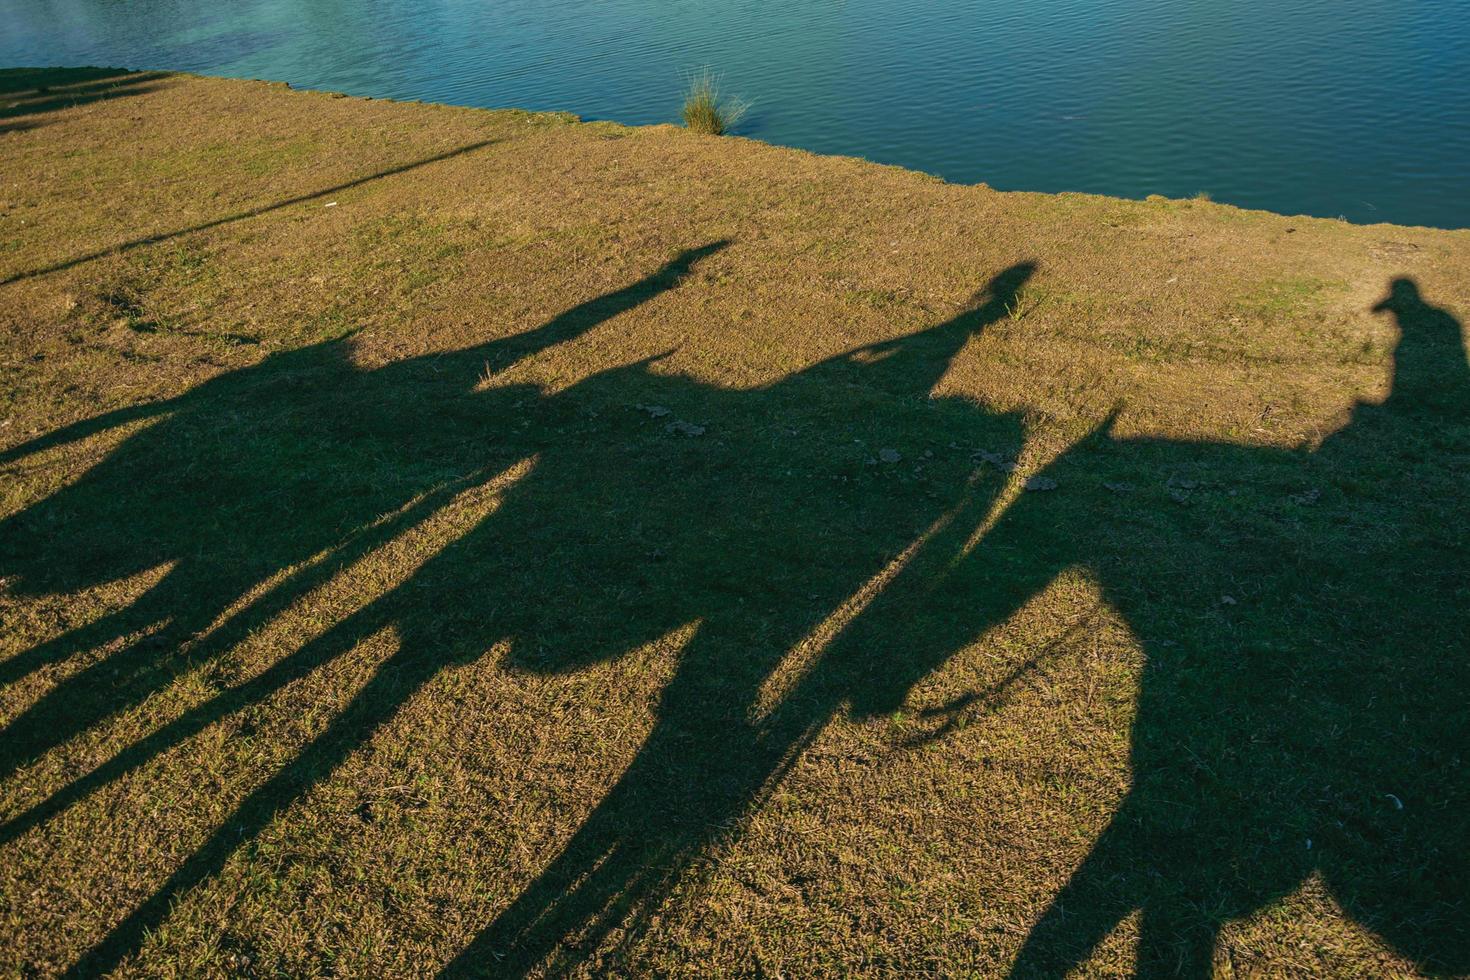 Sombras de silueta de personas a caballo reflejadas en el césped de un rancho cerca de cambara do sul. un pequeño pueblo rural en el sur de Brasil con increíbles atractivos turísticos naturales. foto